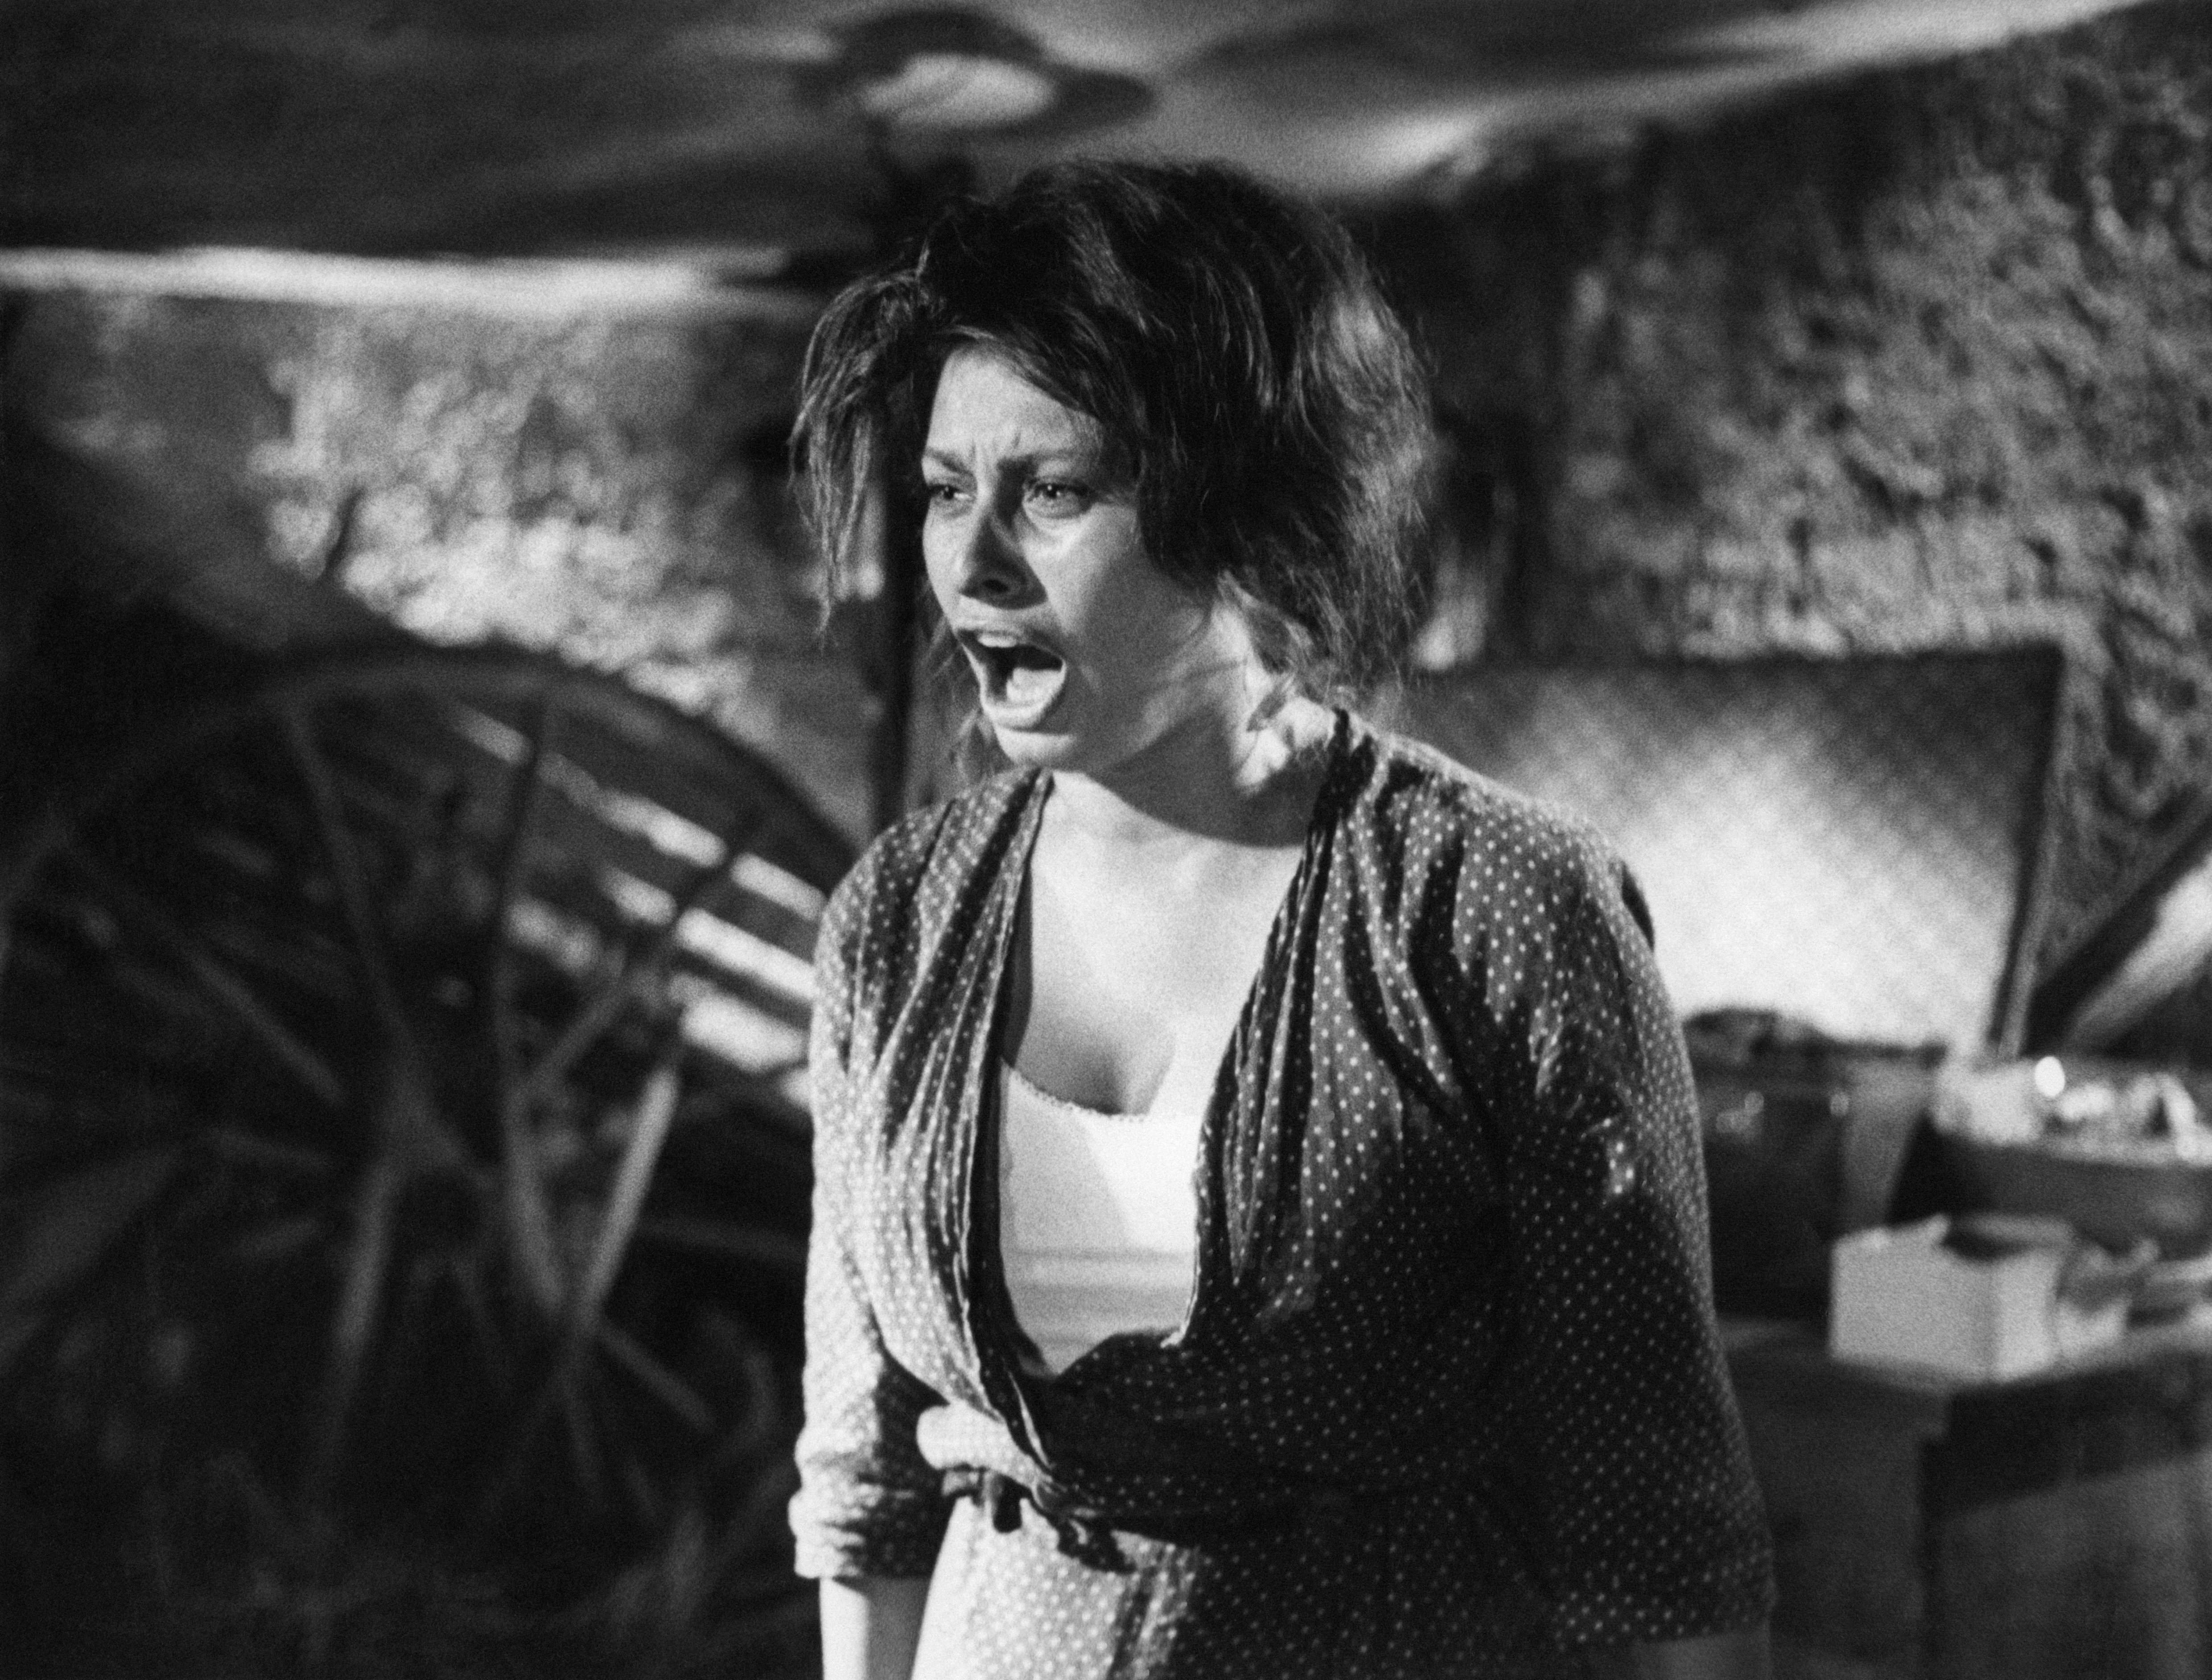 Sophia Loren als (Sofia Villani Scicolone) in dem Film "Two Women", 1960, verzweifelt schreiend. | Quelle: Getty Images